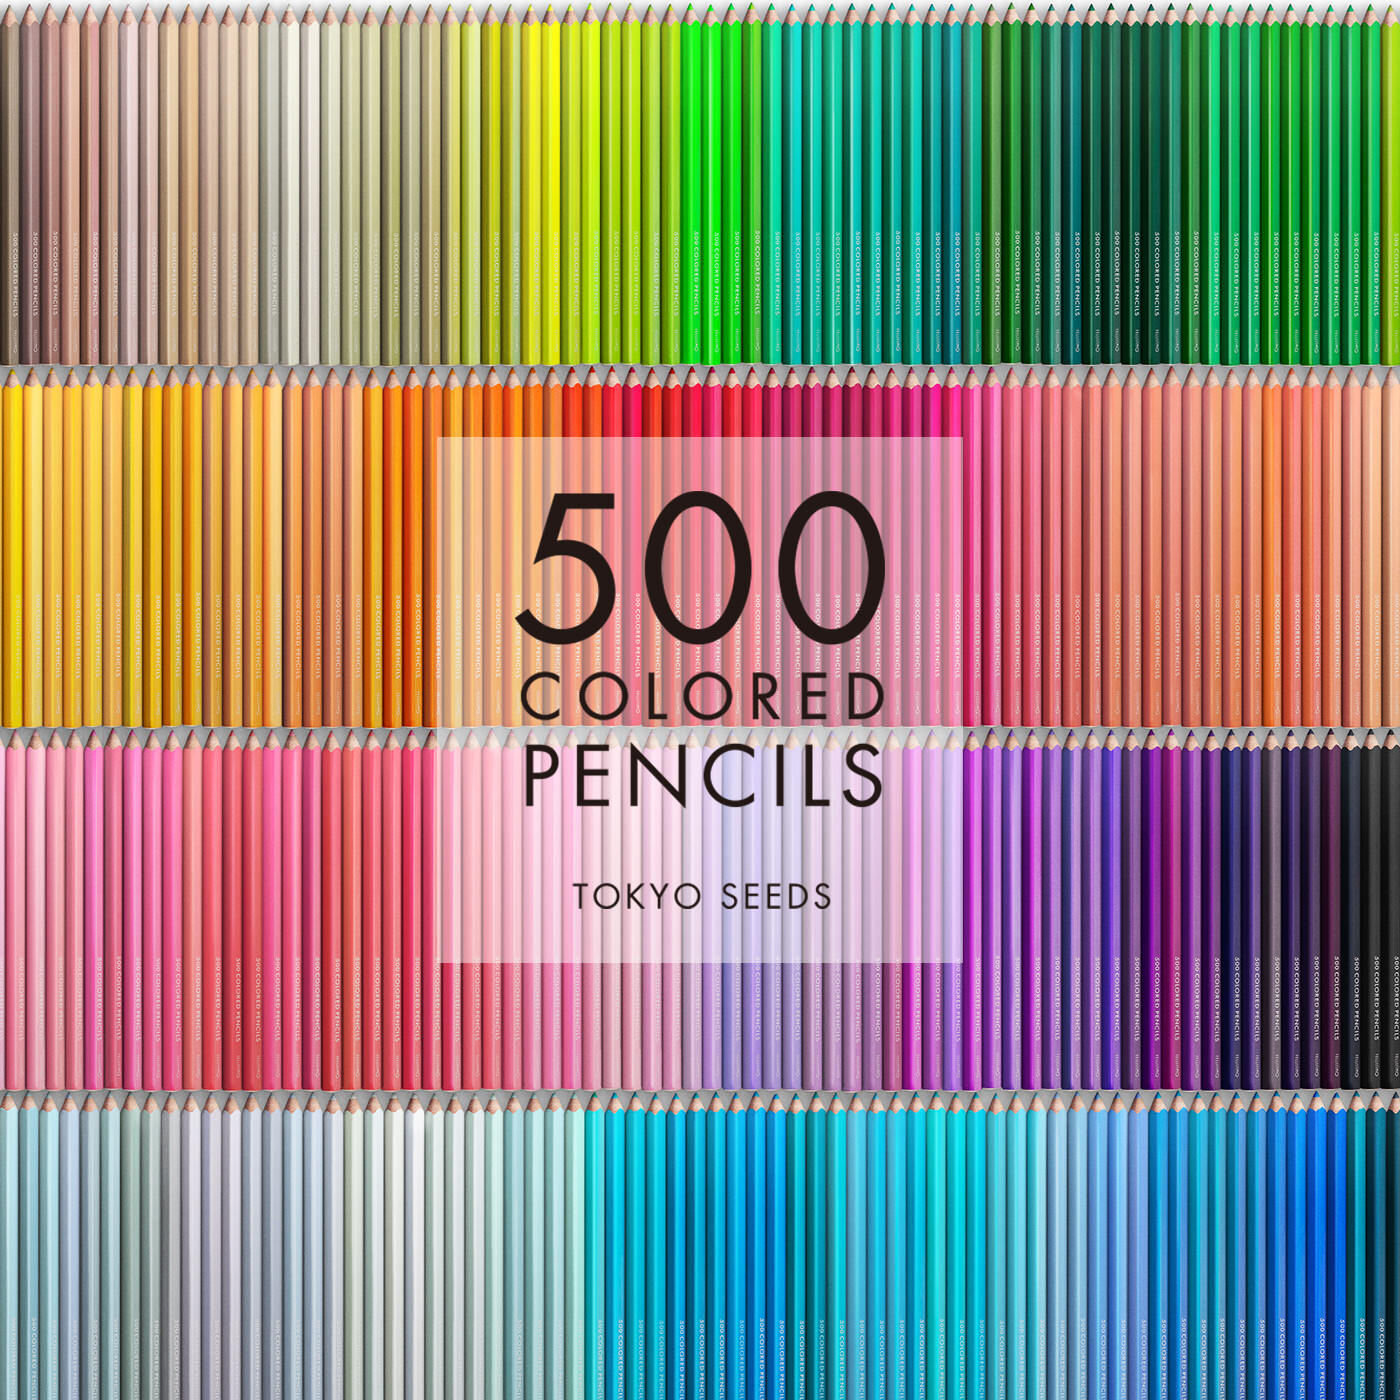 Real Stock|【273/500 AQUA ACAI】500色の色えんぴつ TOKYO SEEDS|1992年、世界初の「500色」という膨大な色数の色えんぴつが誕生して以来、その販売数は発売当初から合わせると、世界55ヵ国10万セット以上。今回、メイド・イン・ジャパンにこだわり、すべてが新しく生まれ変わって登場しました。